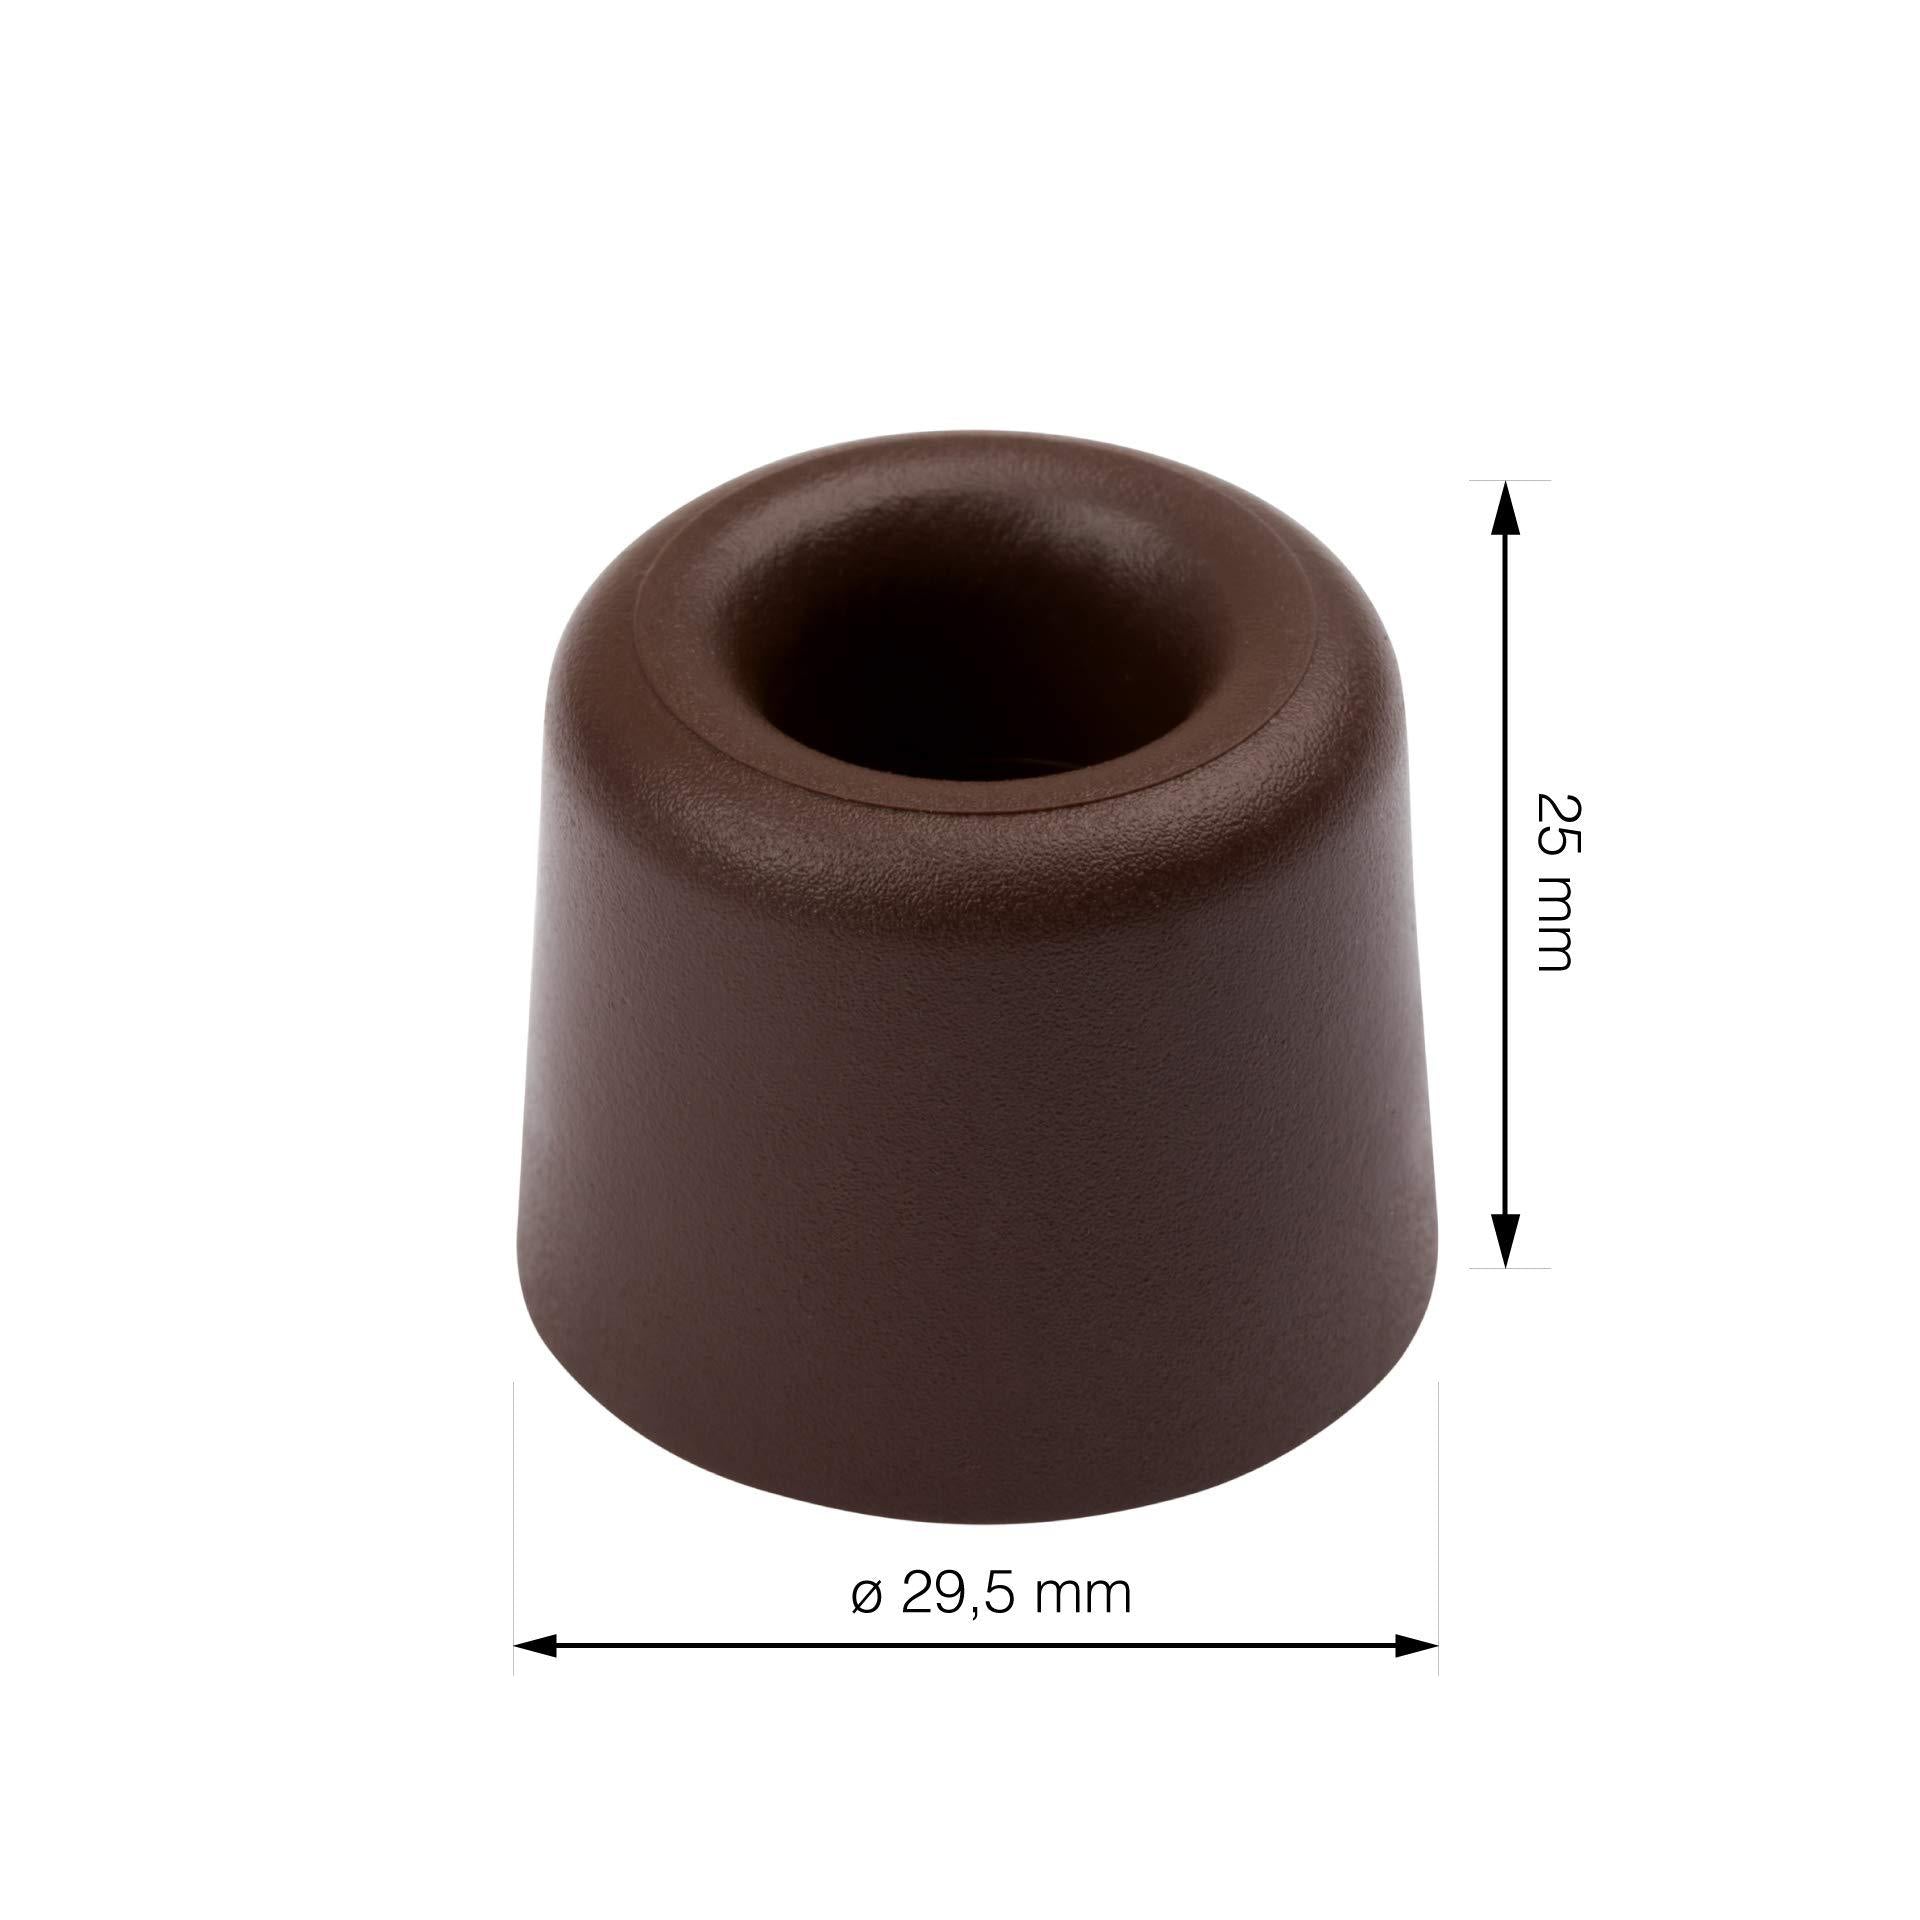 LouMaxx Türstopper Boden Schrauben aus Gummi - 3er Set in braun - Türstopper Gummi - Türstopper Kunststoff - Türstopper Bodenmontage